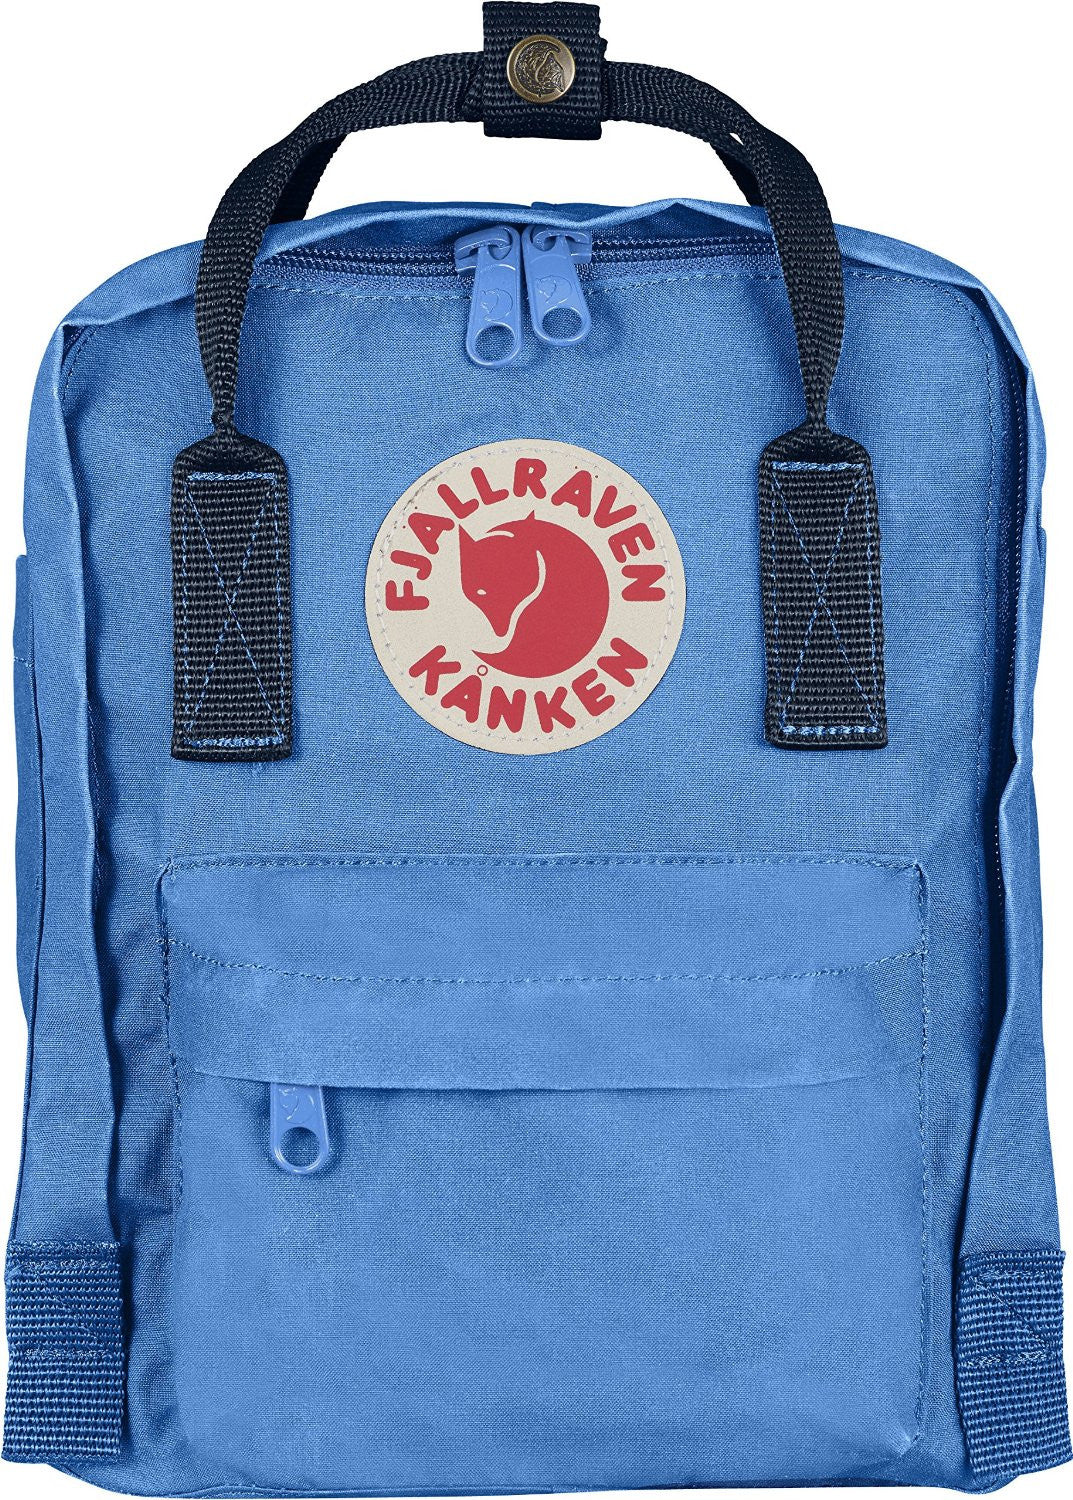 Fjallraven Women's Kanken Mini Backpack, Sky Blue, One Size